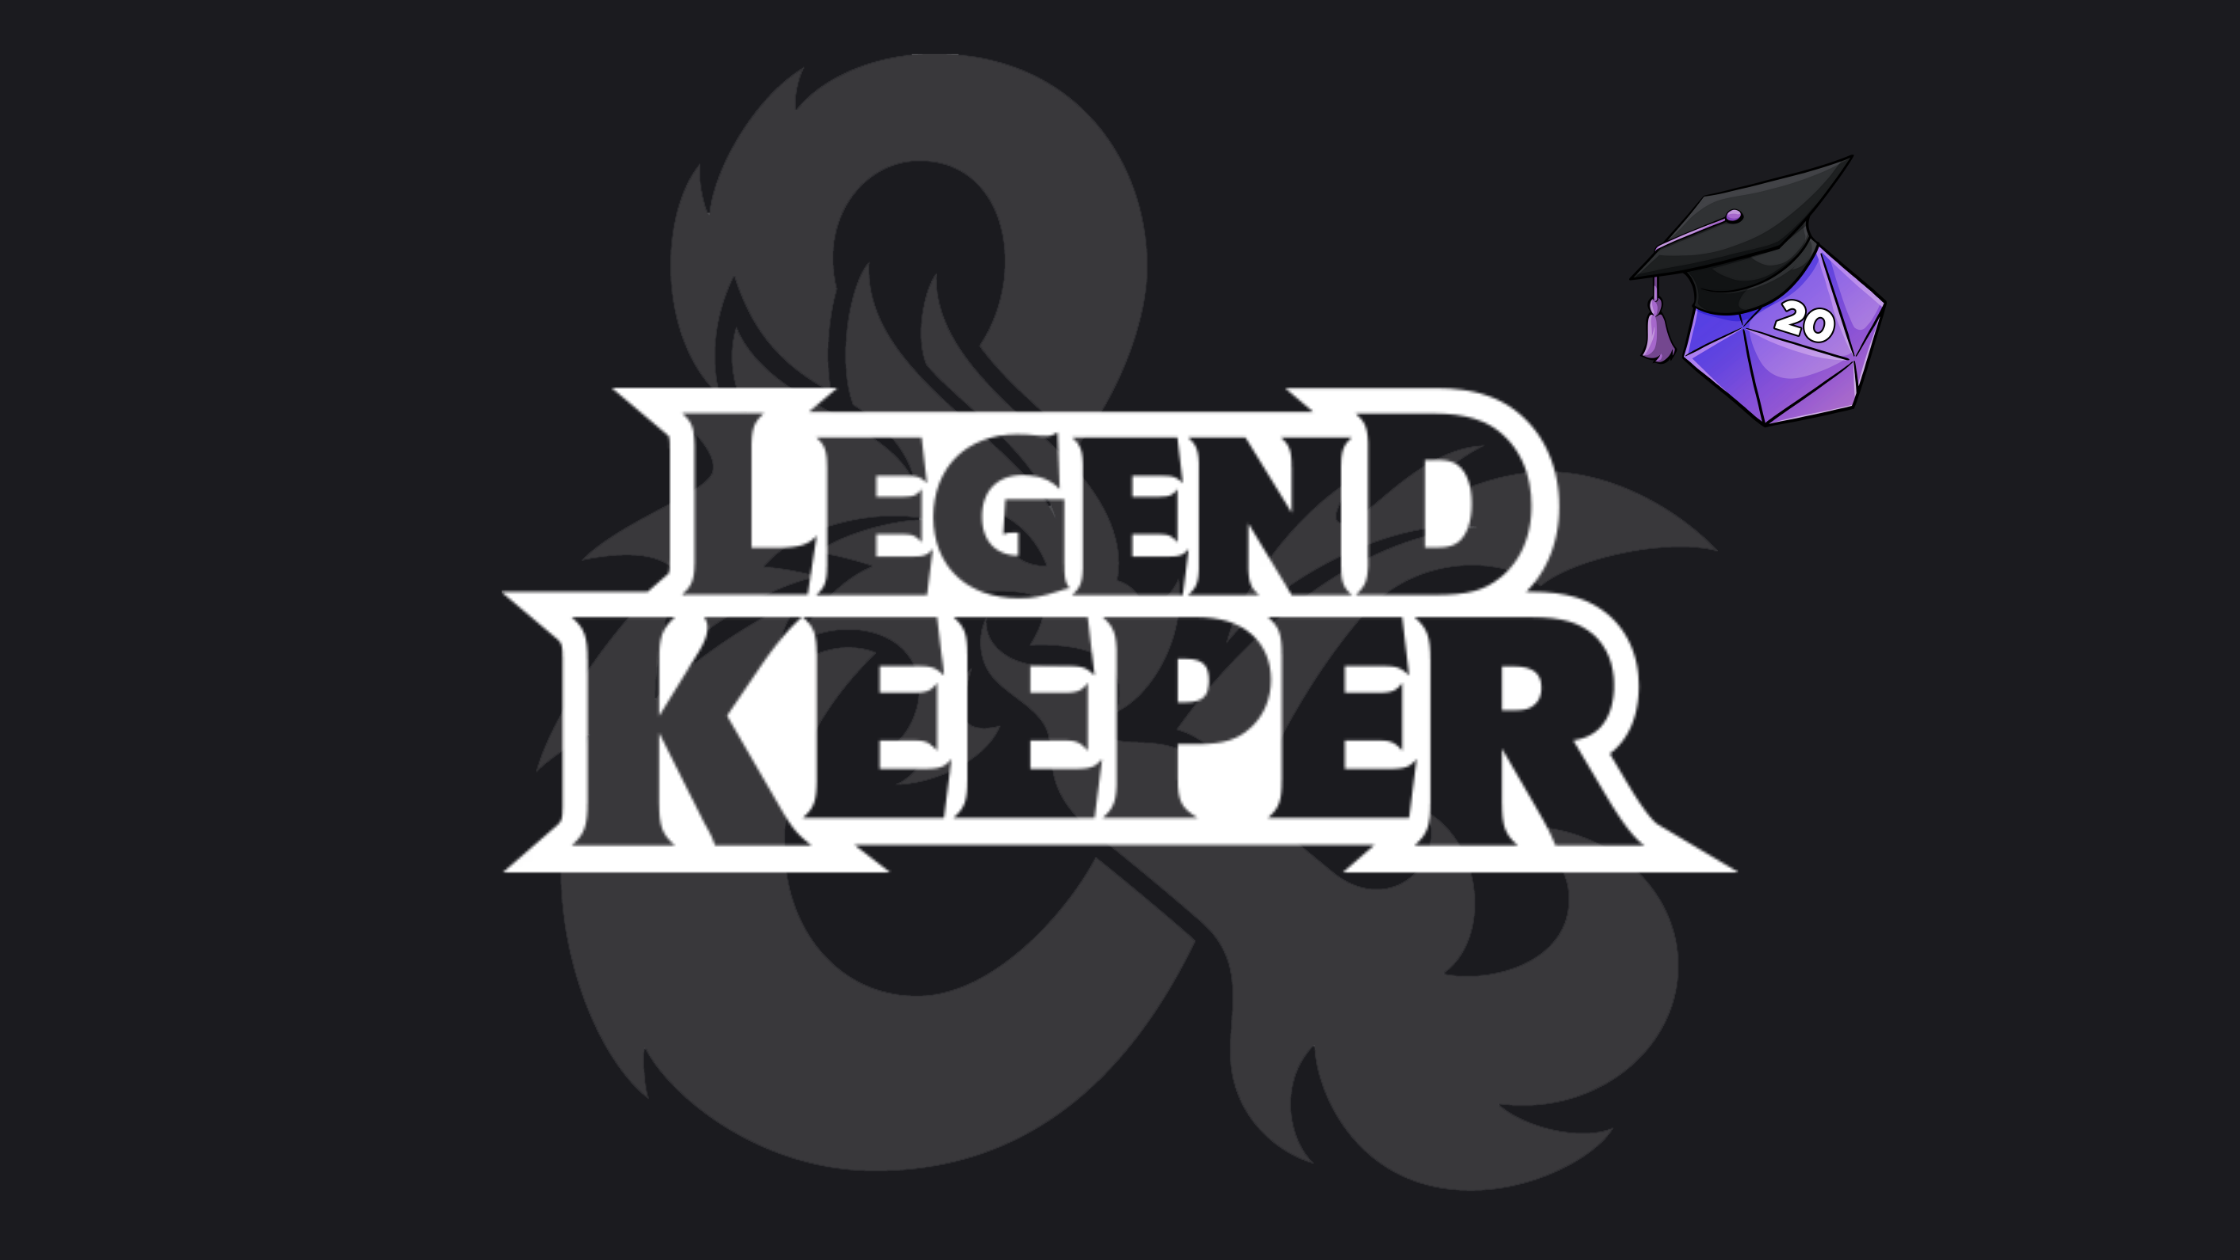 LegendKeeper for D&D